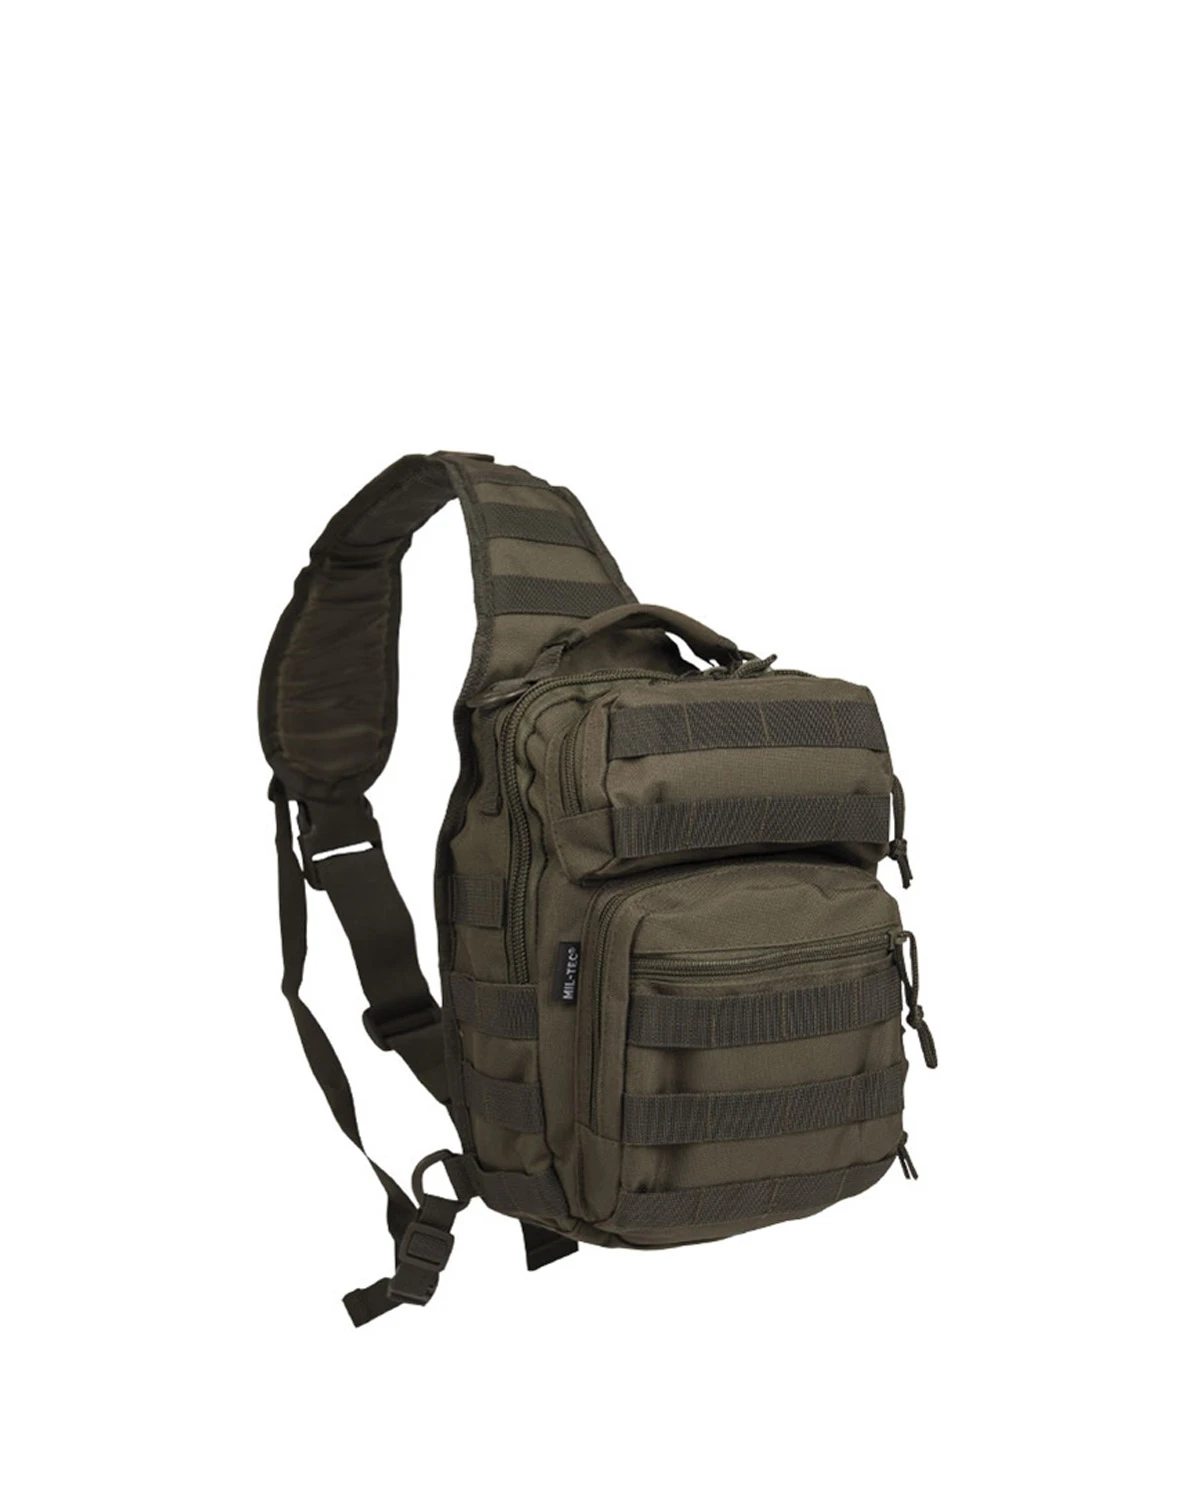 Mochila Mil-Tec Assault Pack Dark Camo 36L Dark Camo Backpack Mil-Tec –  TugaSox Fitness Store